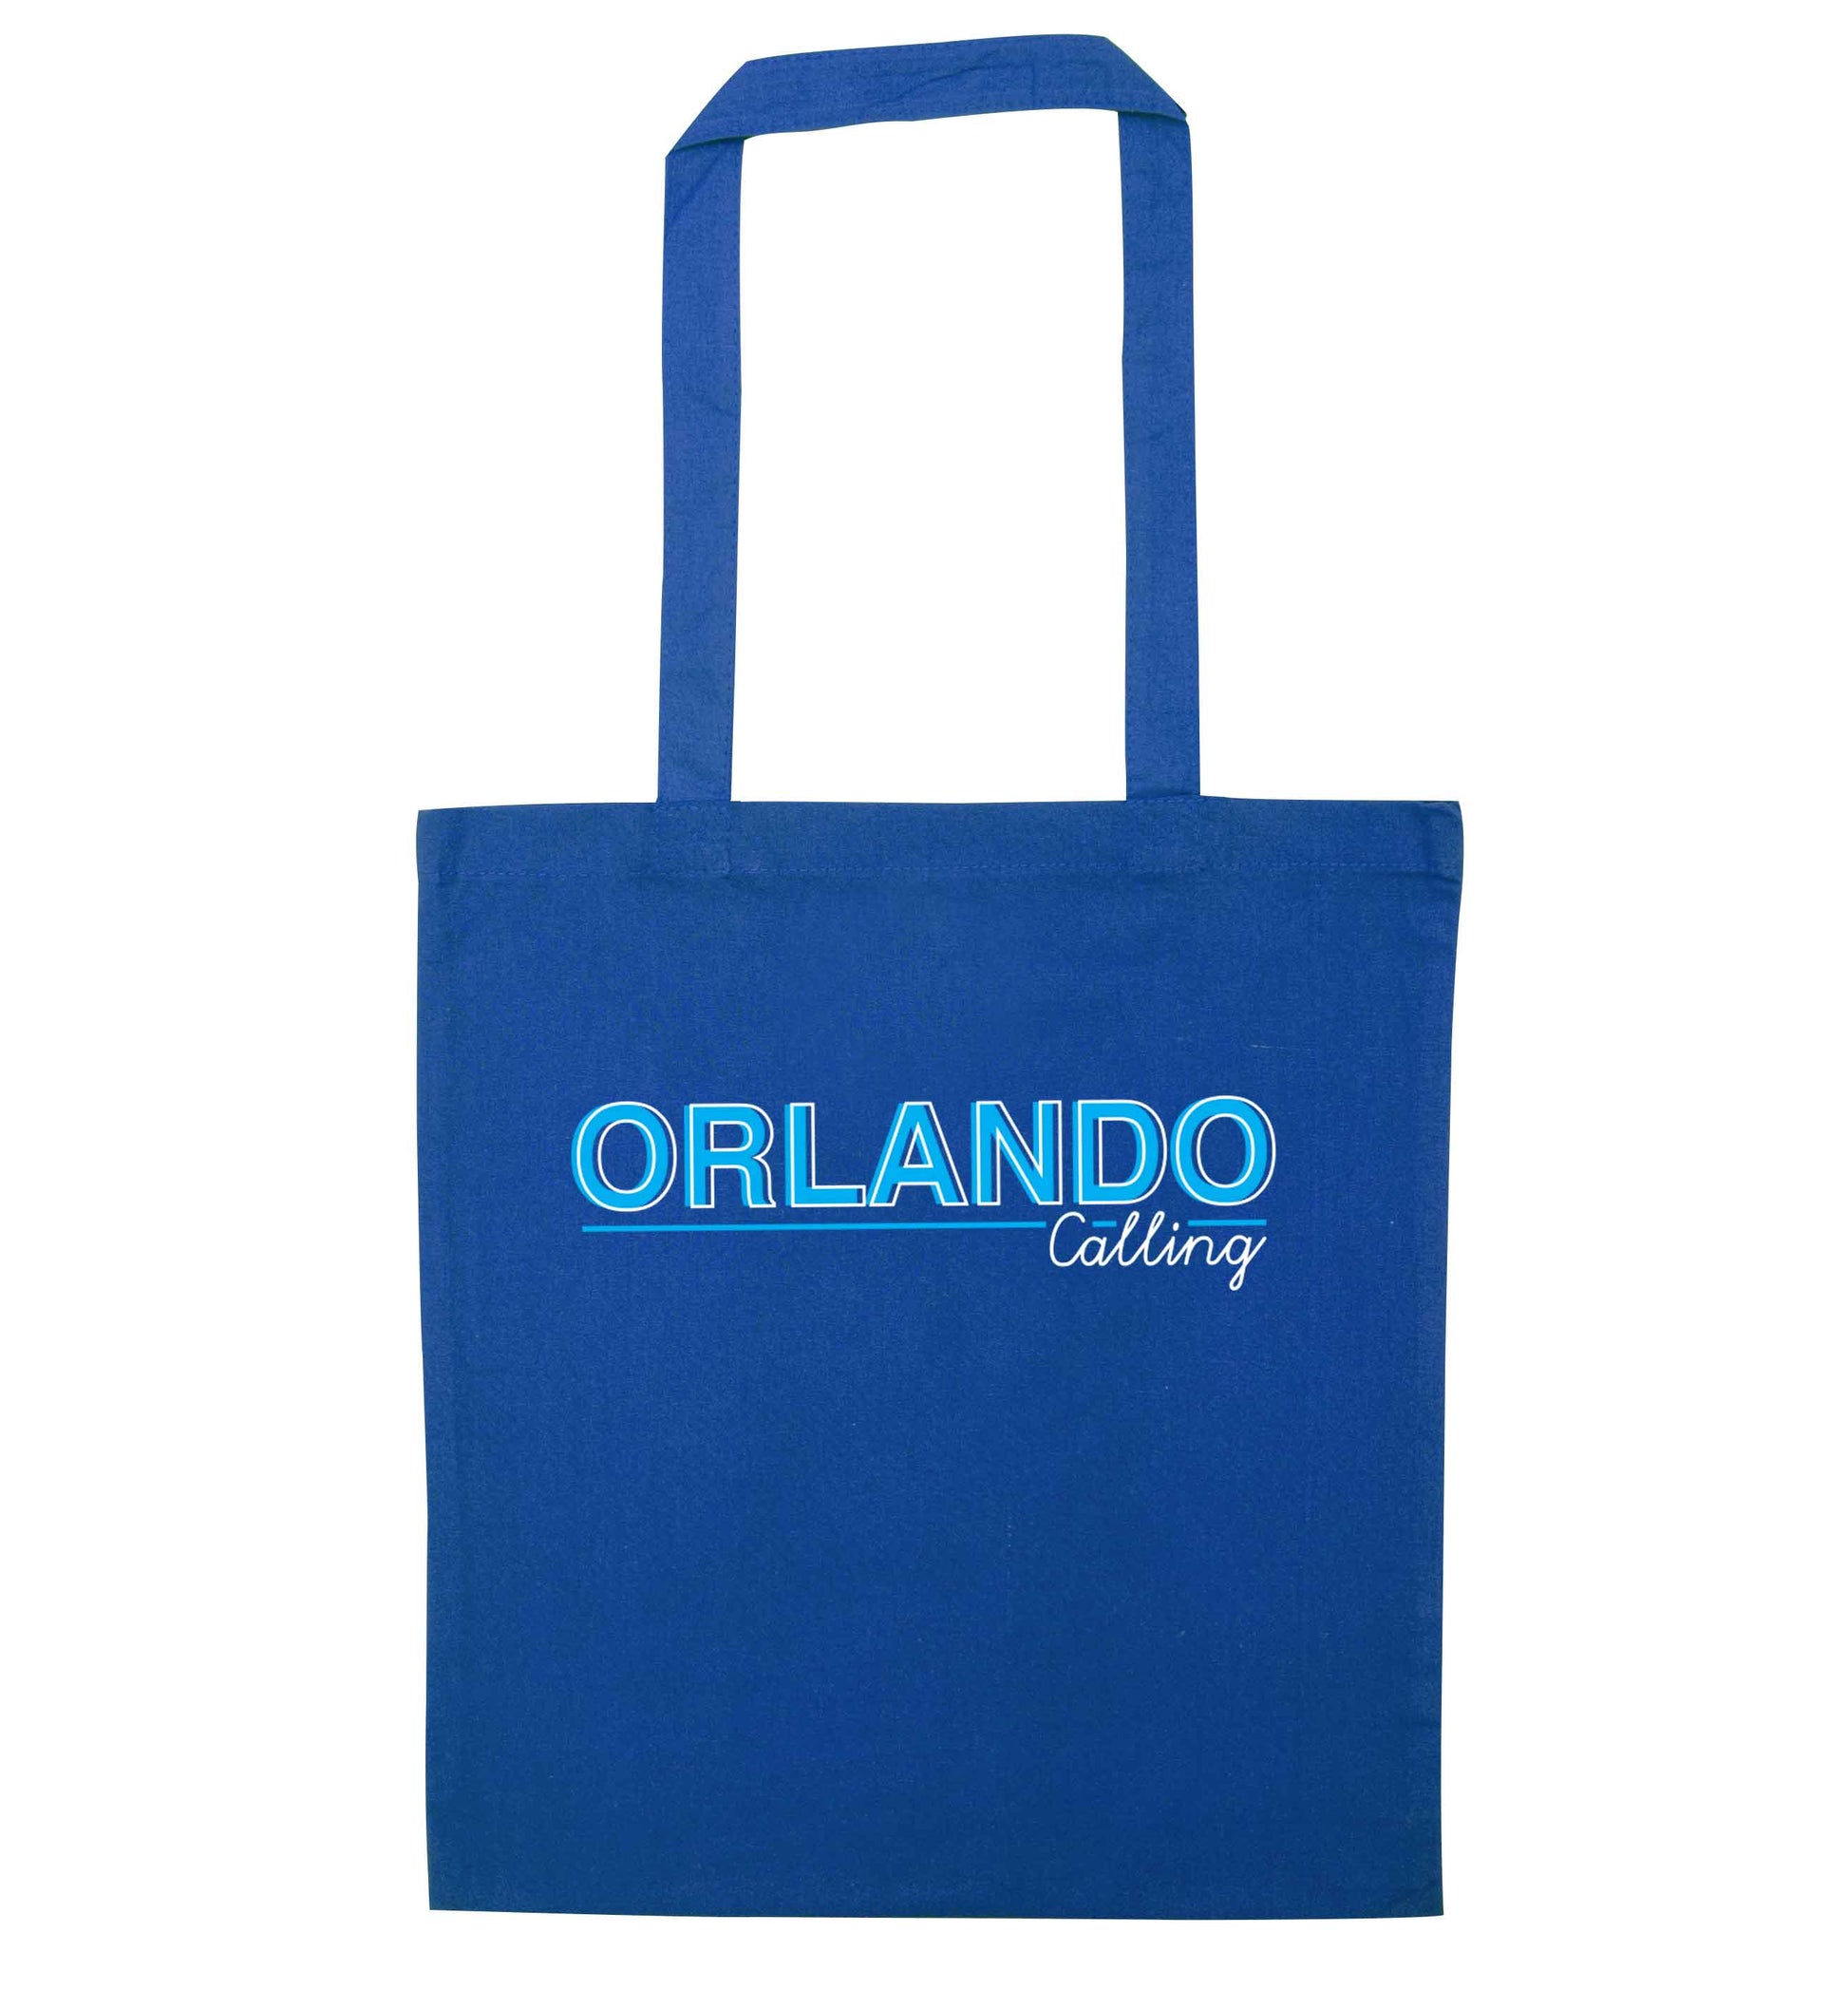 Orlando calling blue tote bag